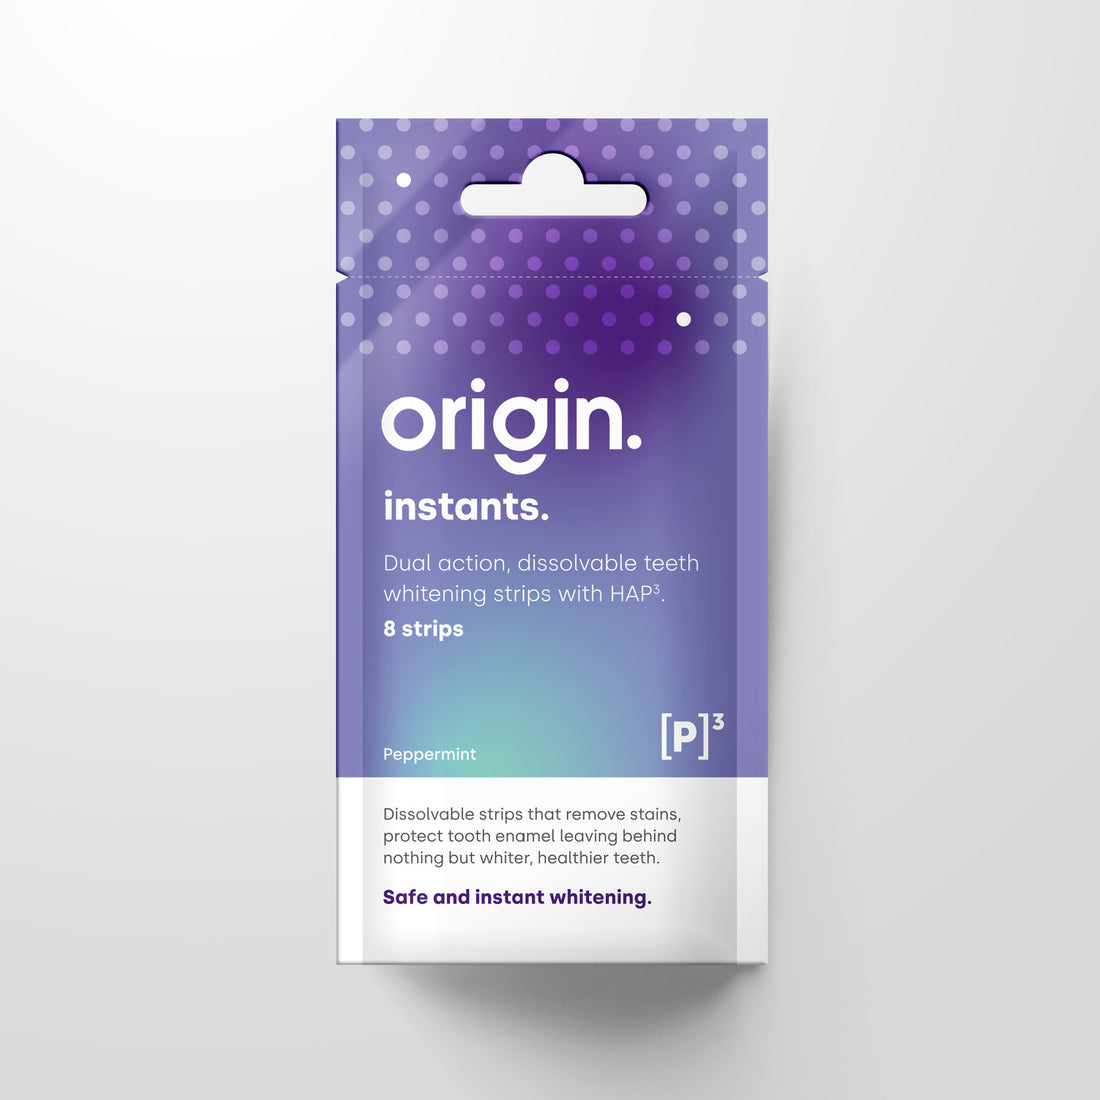 Origin instants